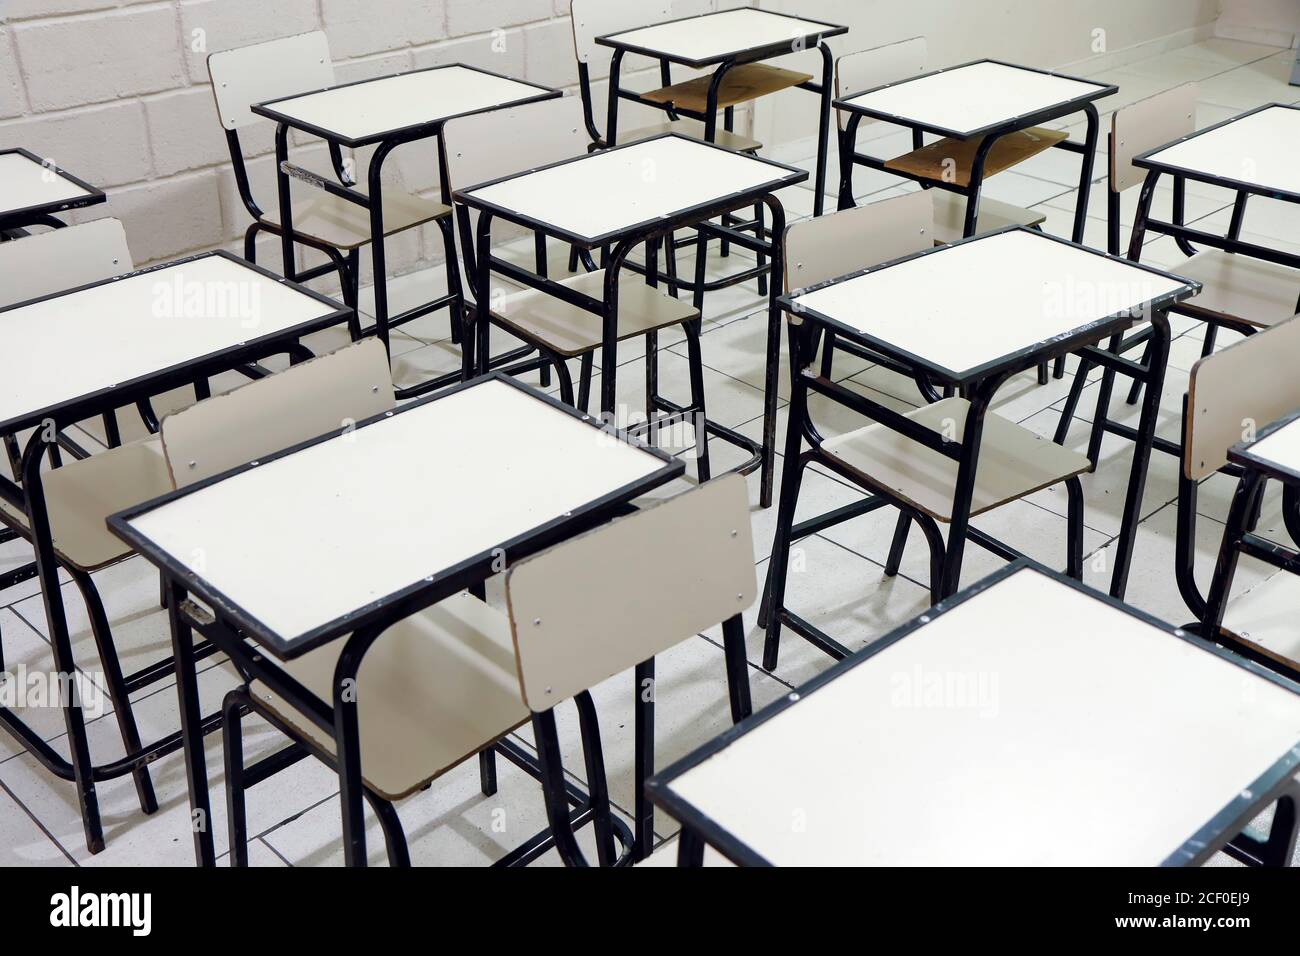 diversi tavoli e sedie in classe in un vuoto scuola senza studenti Foto Stock